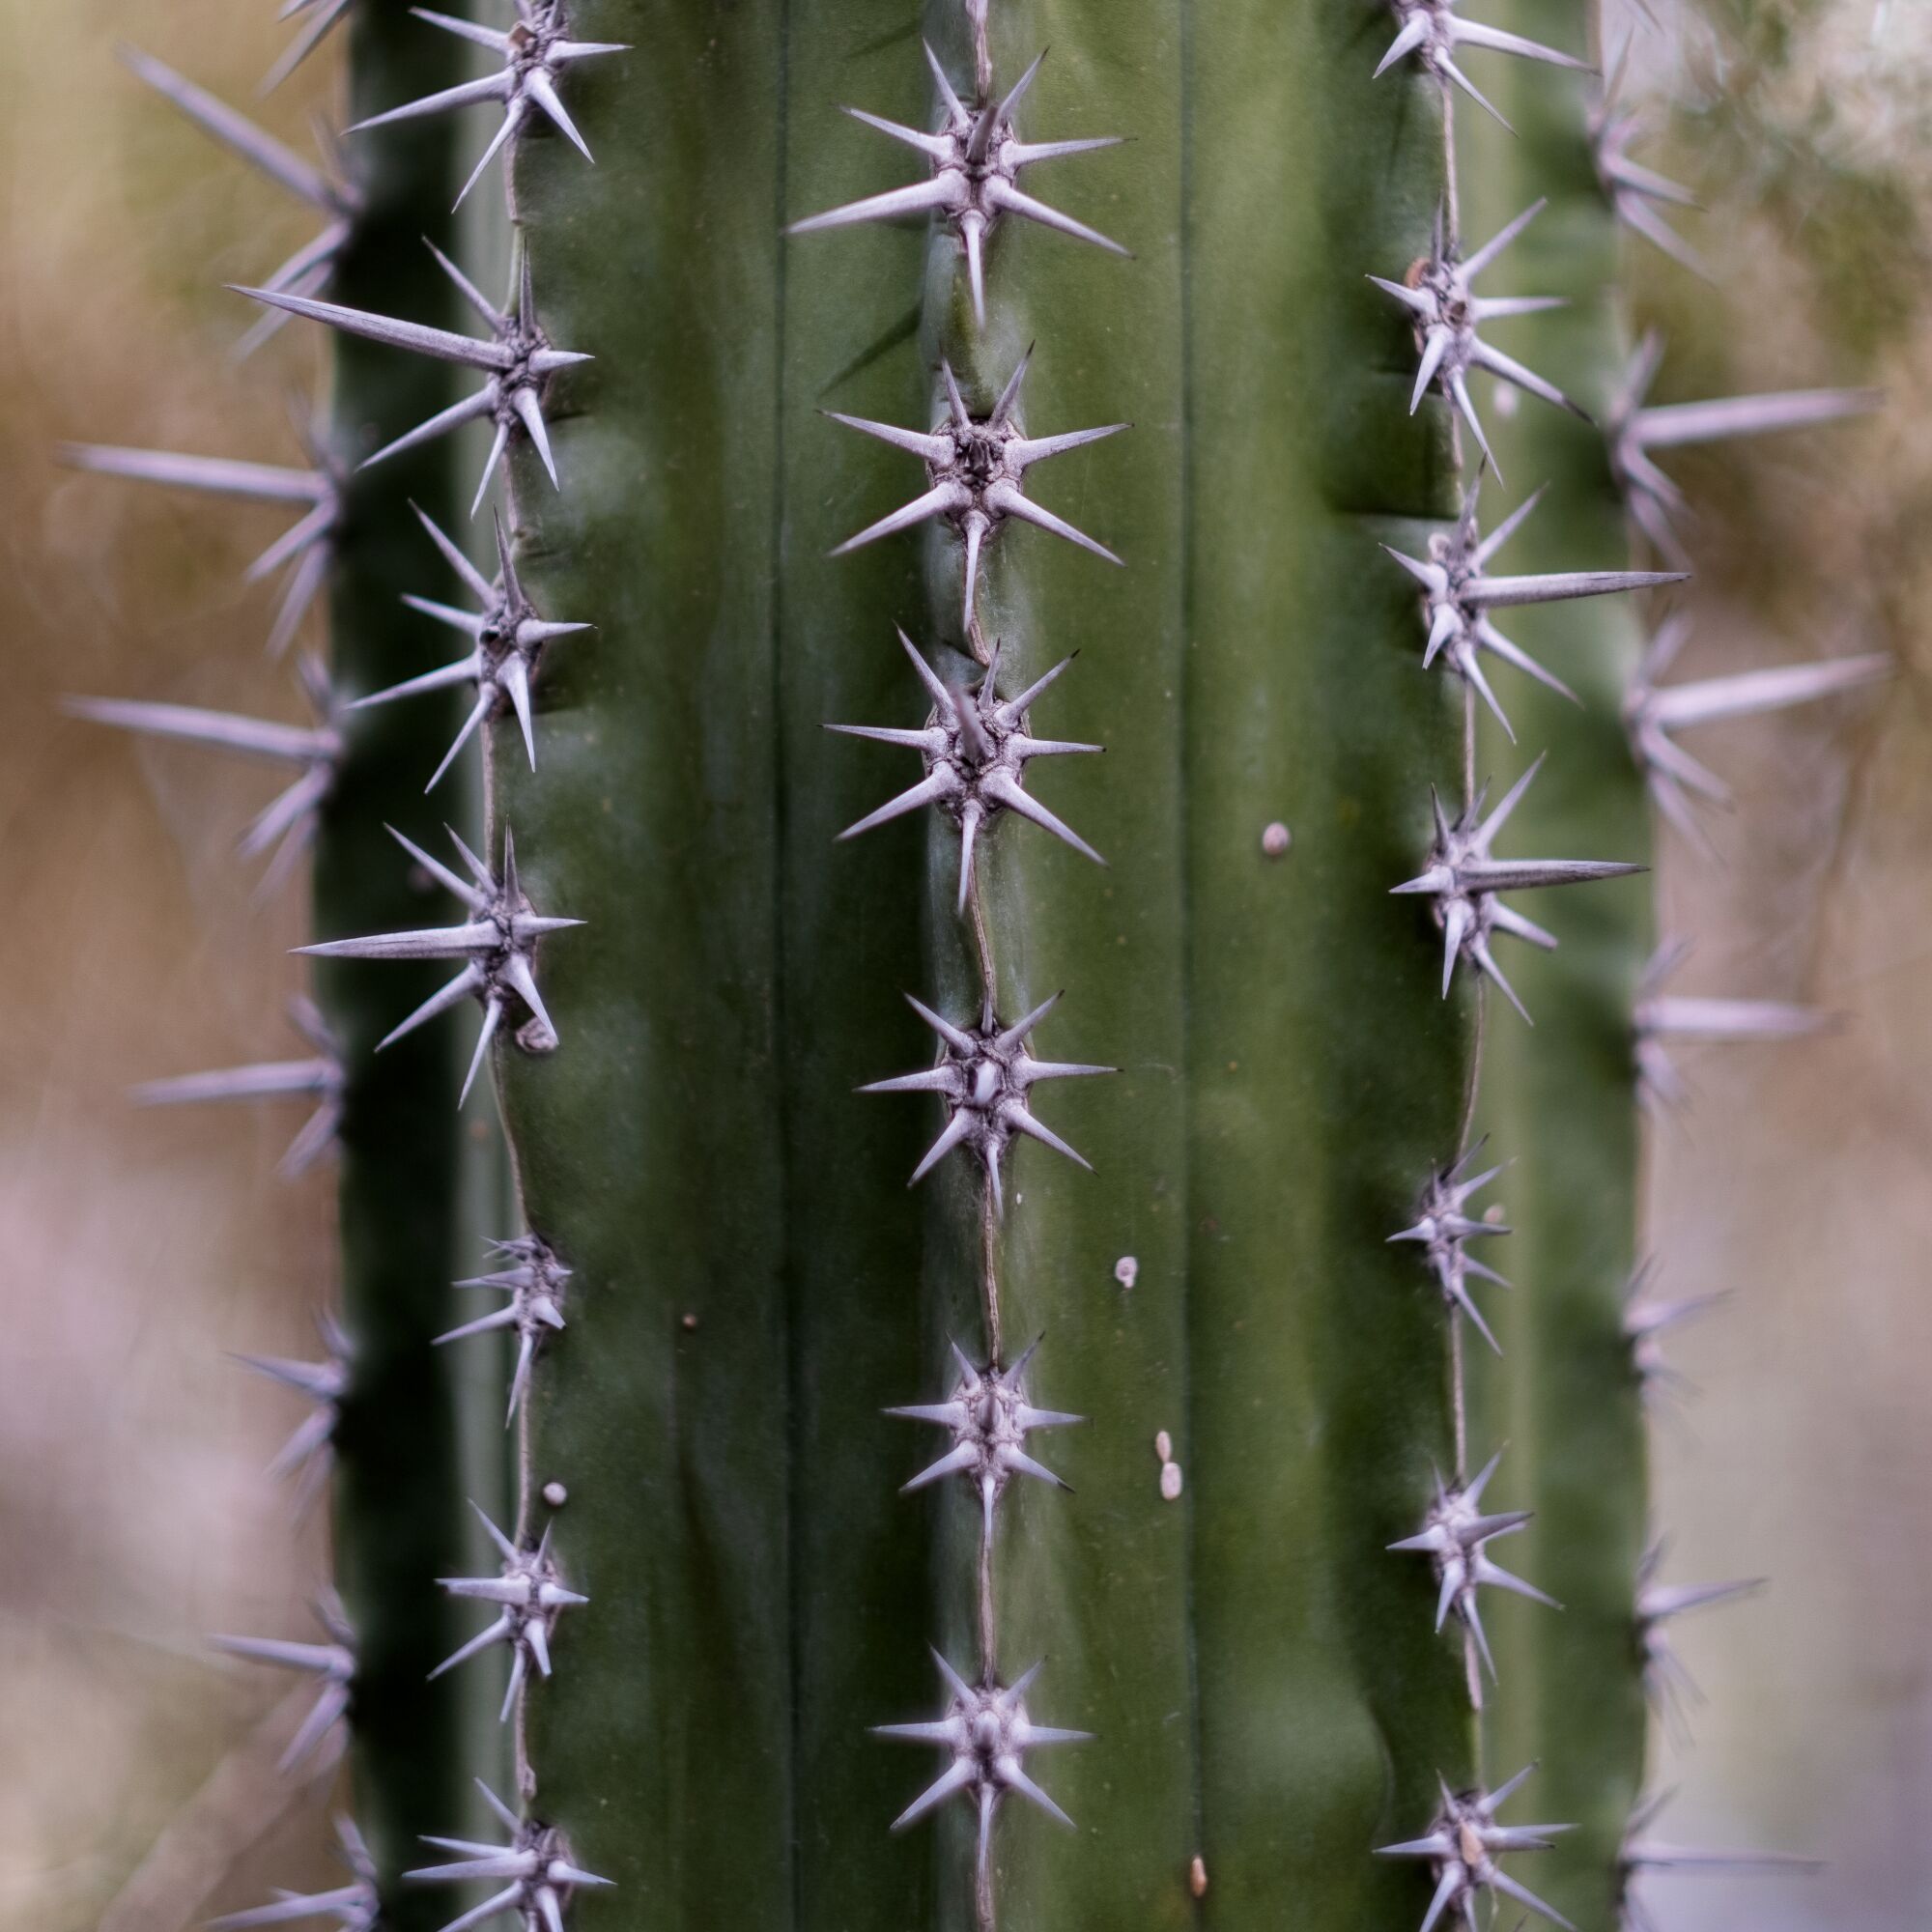 Machaerocereus gummosus cactus with clusters of white spines